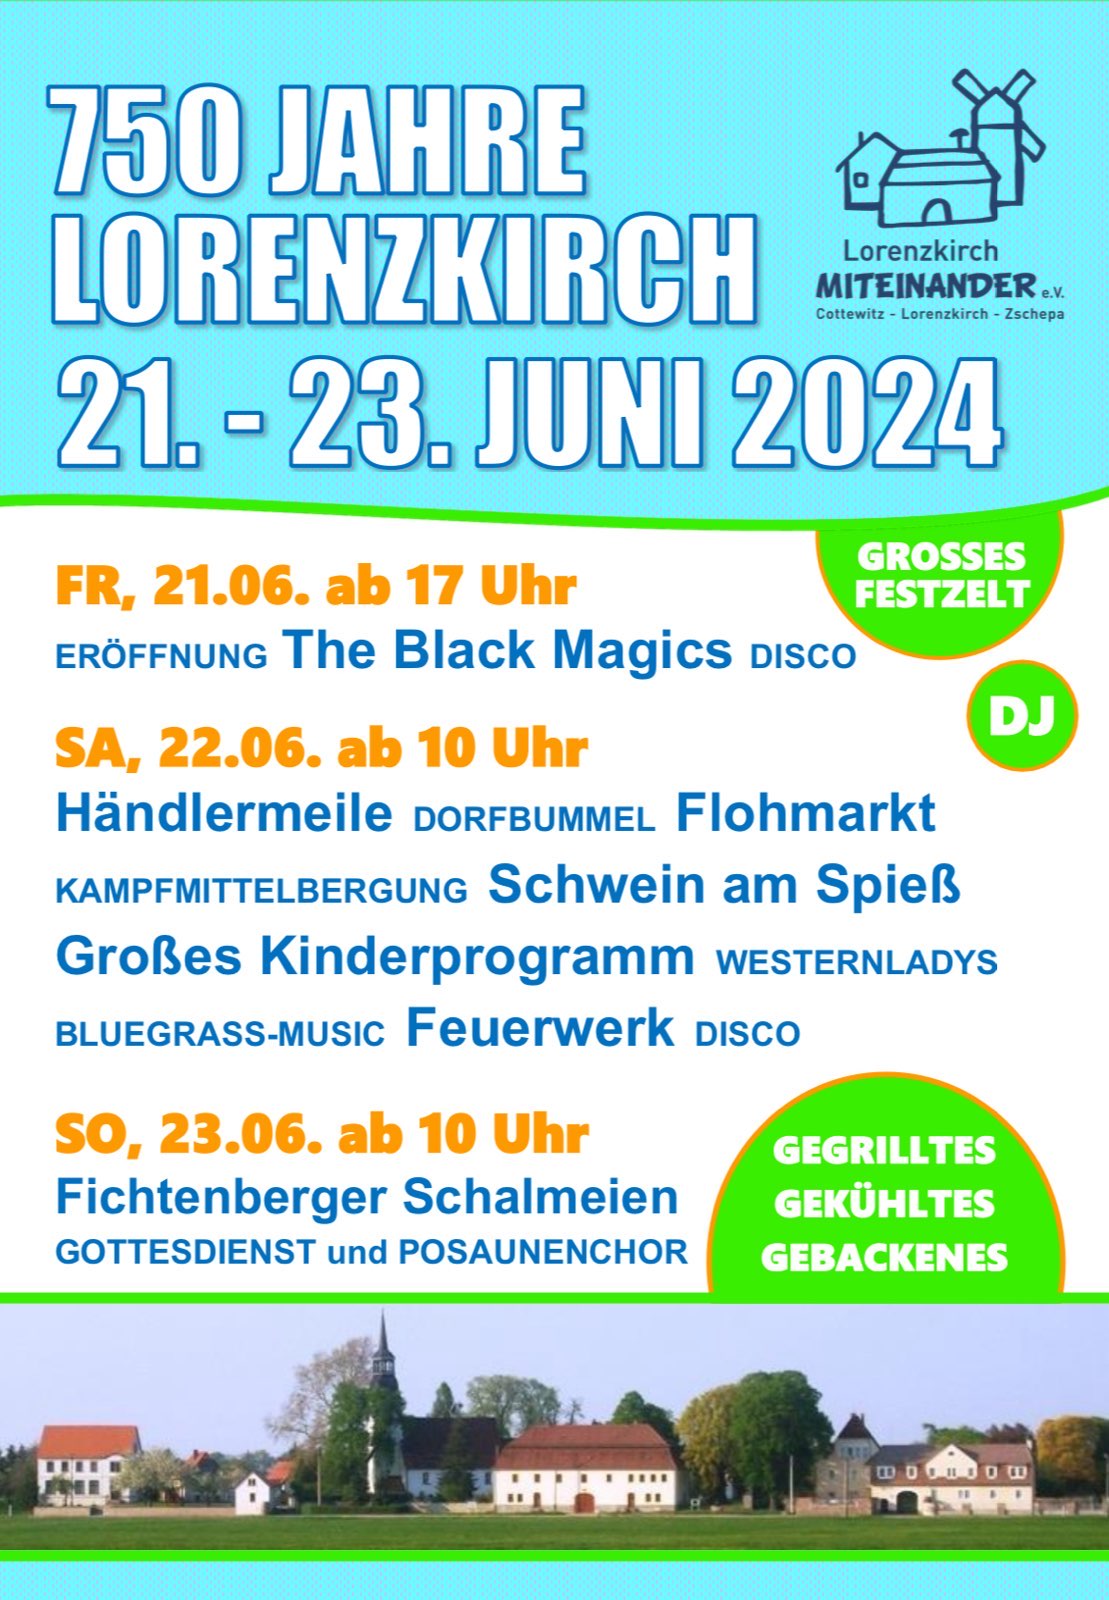 Lorenzkirch feiert im Juni 750 Jahre – feiern Sie mit!